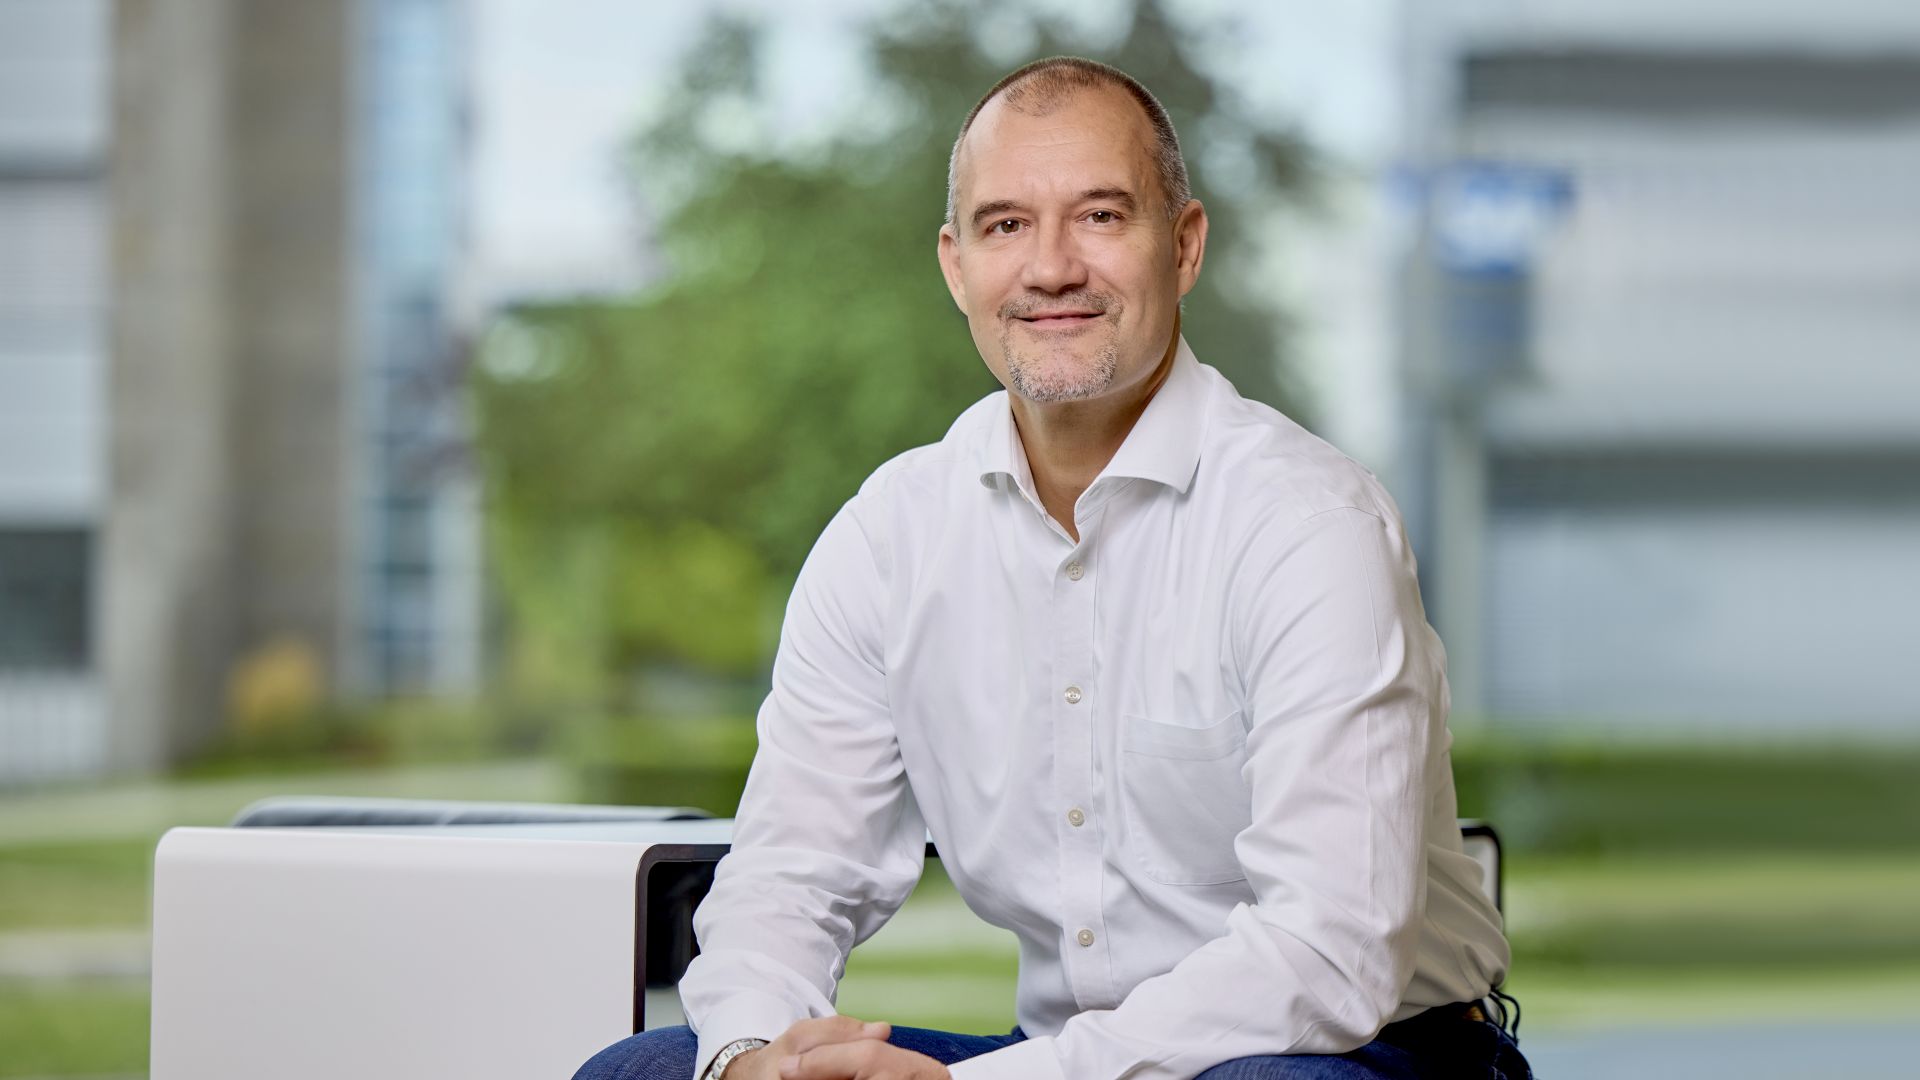 Sven Denecken, vicepresidente senior y responsable de Marketing y Soluciones de Industria y Experiencia del Cliente (CX) de SAP